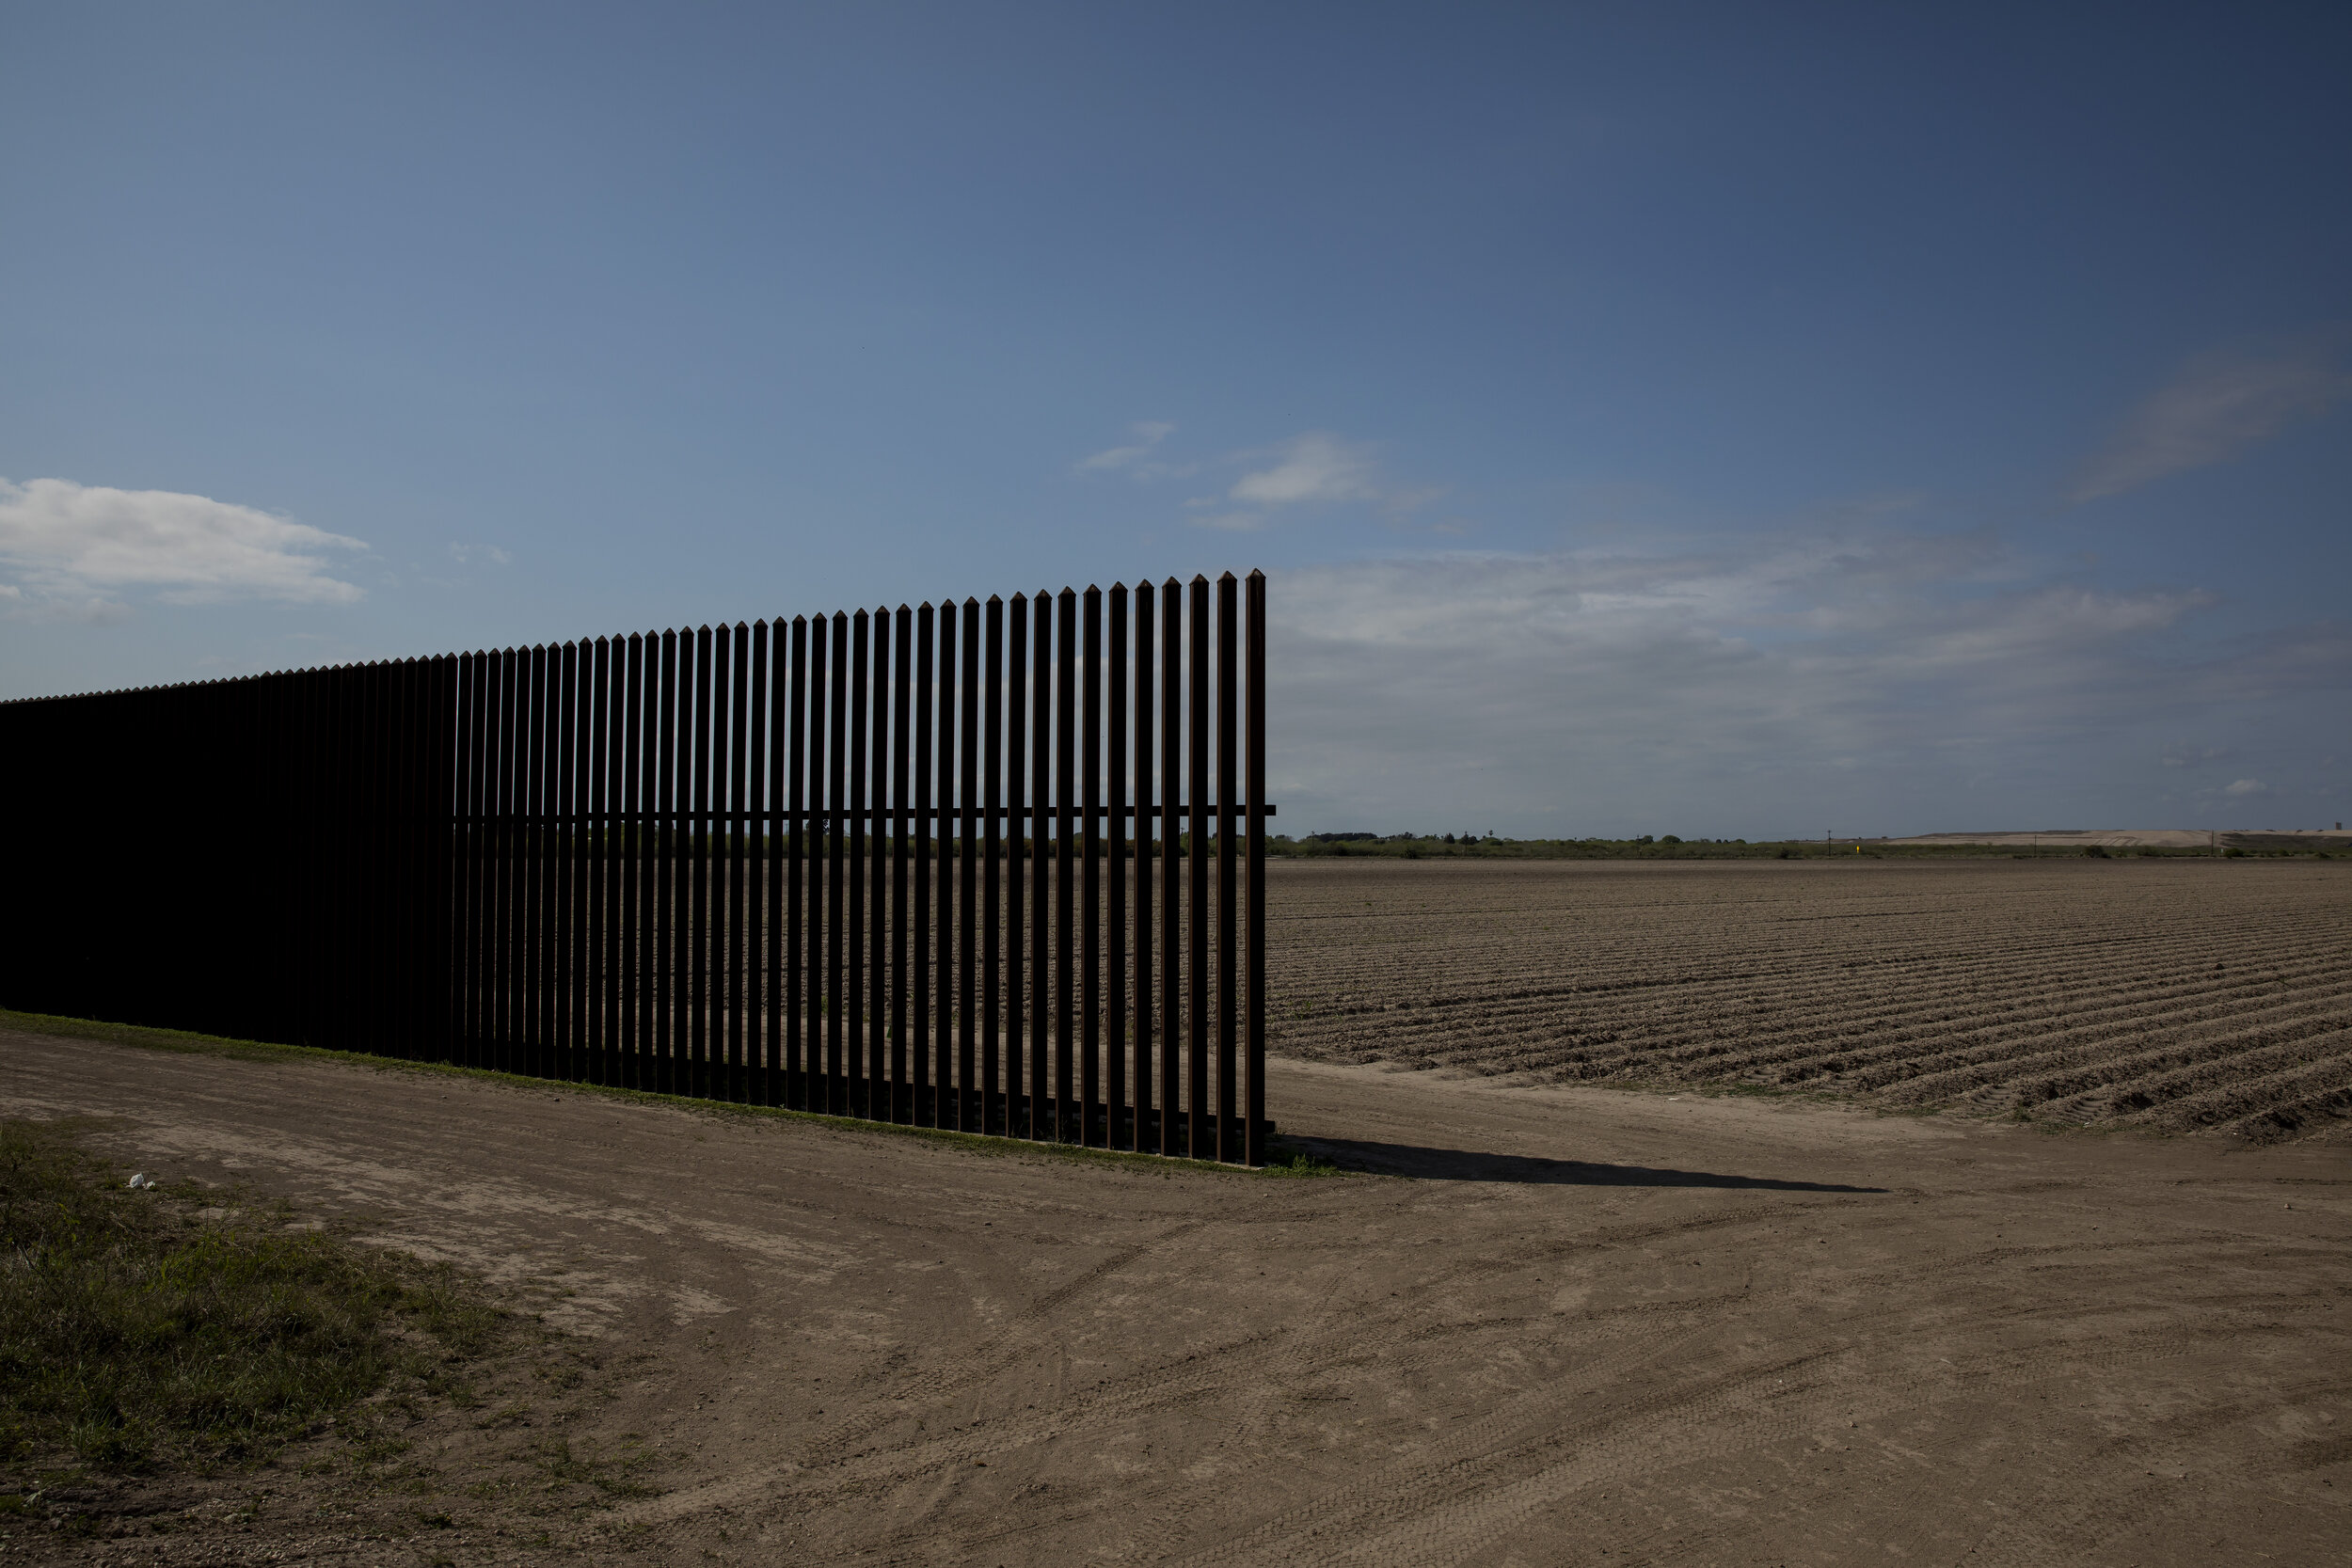   From     Borders    : Border Wall, San Benito, TX. 2017  